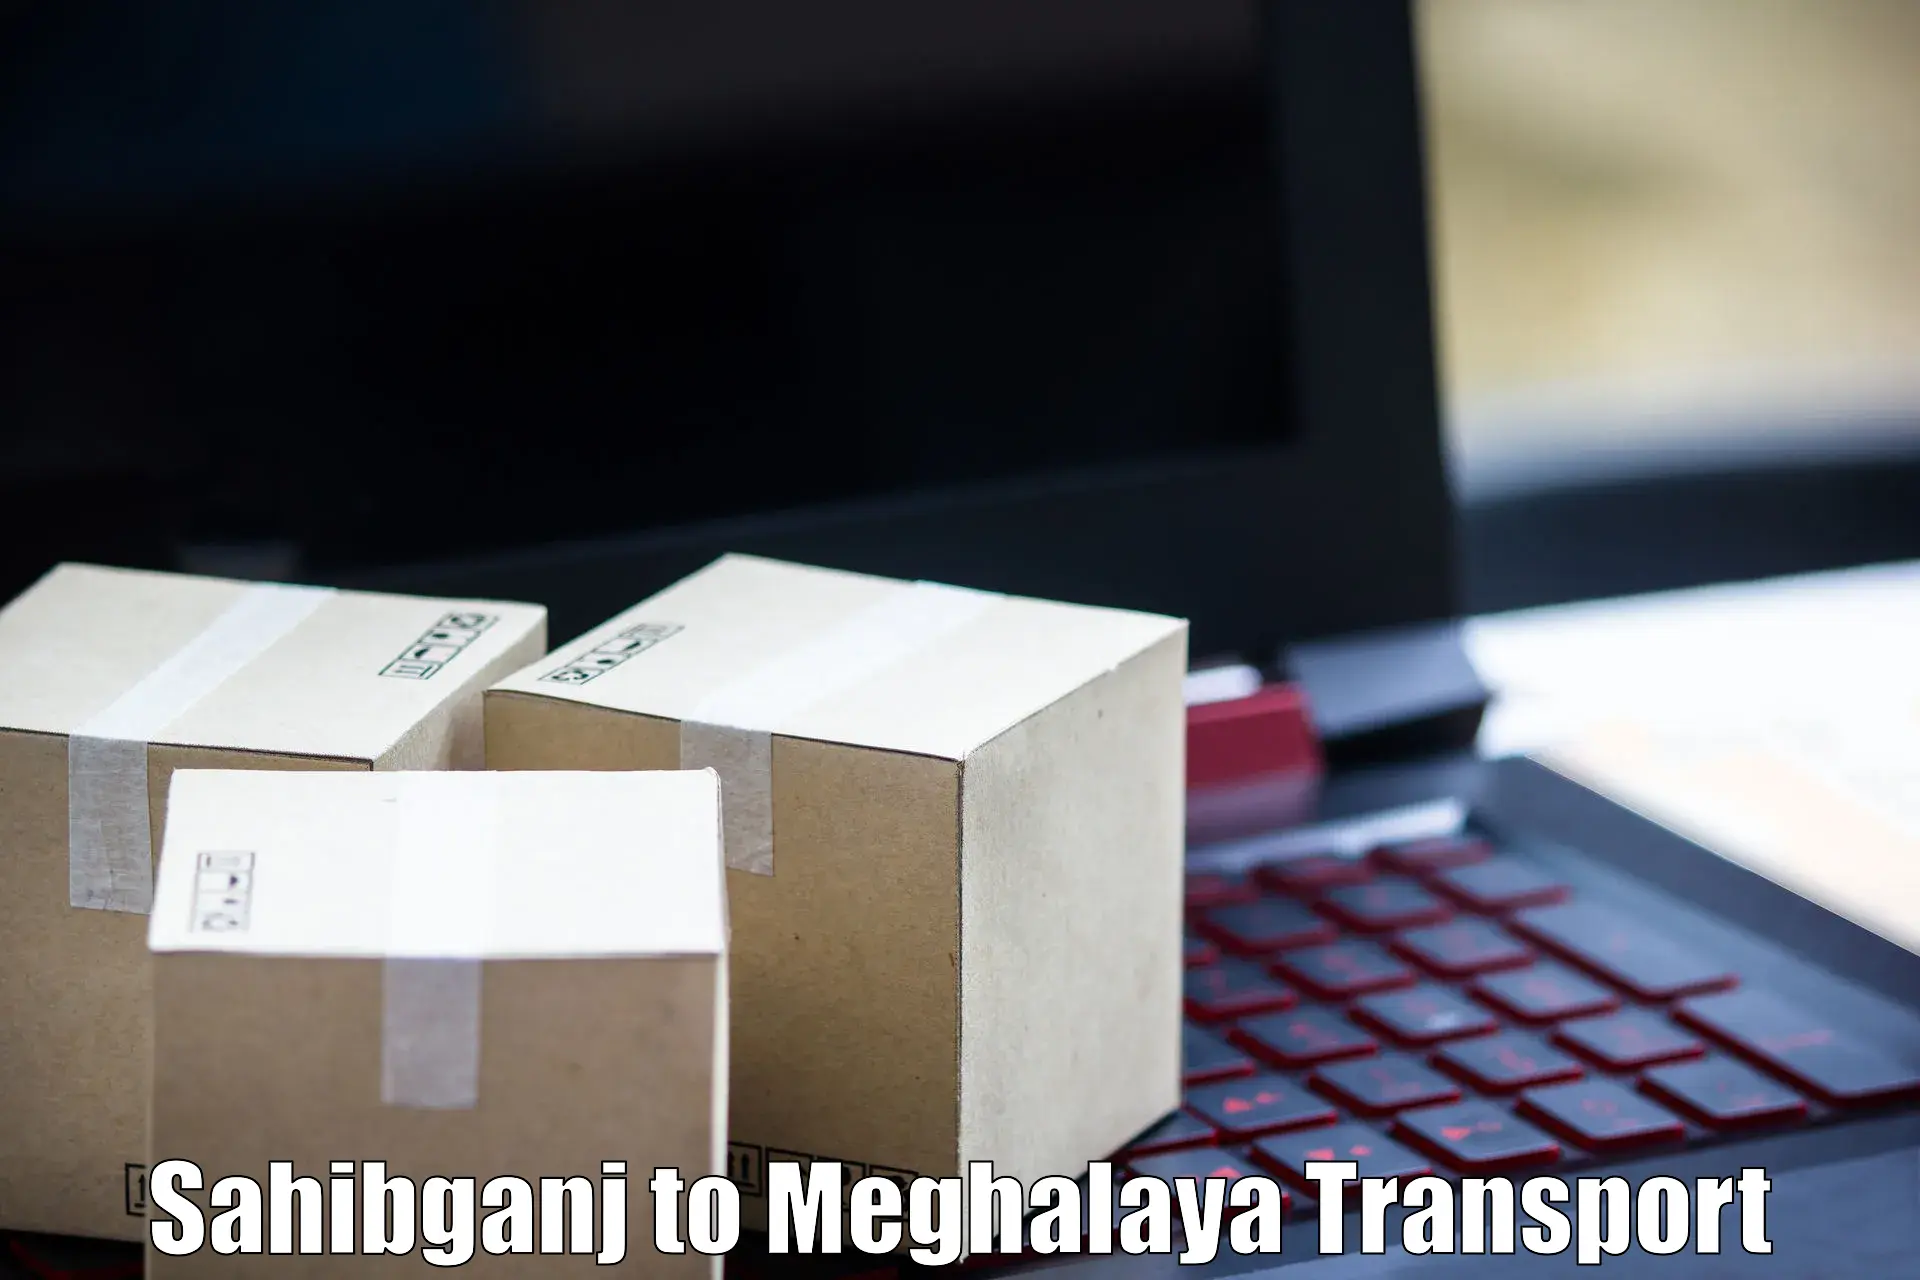 Logistics transportation services Sahibganj to Shillong